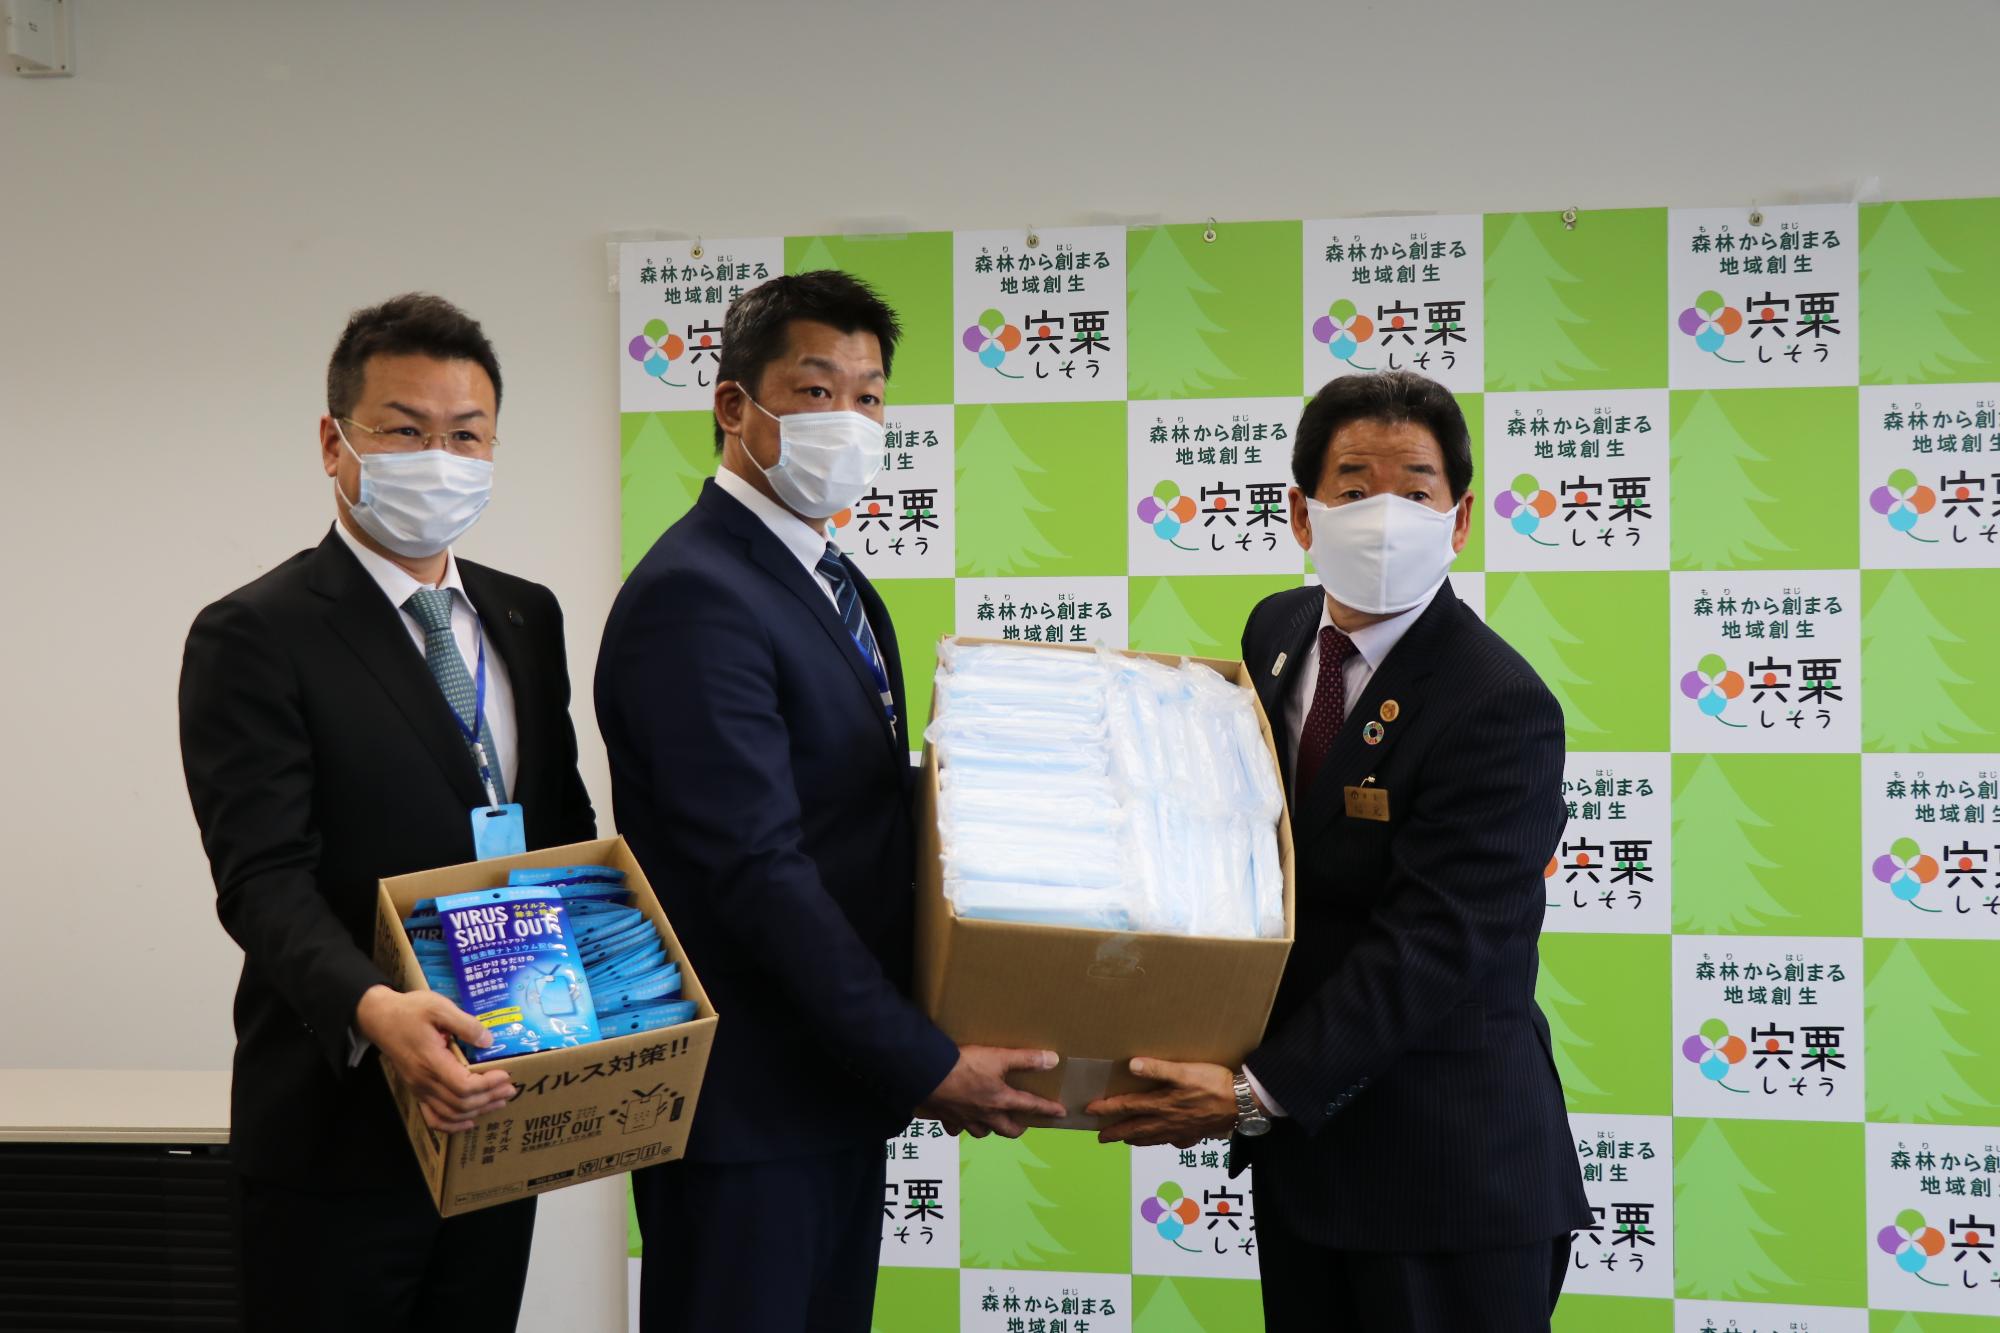 ロイヤルニッポン財団の毛利氏と小倉氏からマスクを受け取る市長の写真